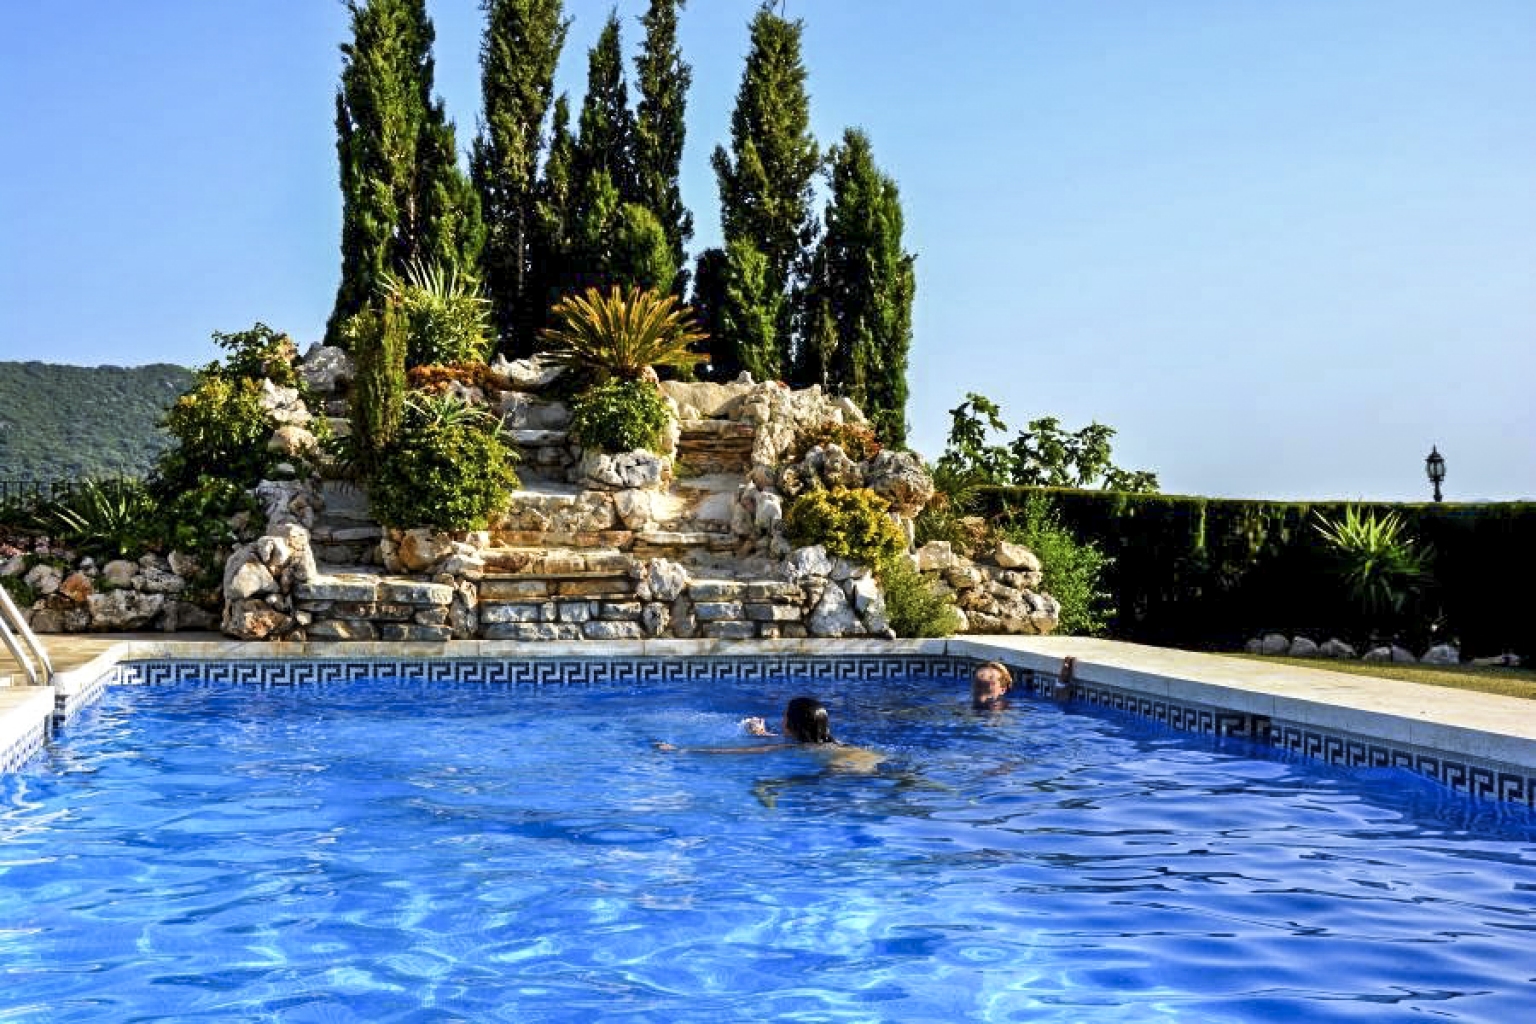 Cascada y piscina del alojamiento turístico e histórico Cortijo Las Monjas. Huéspedes disfrutando de un soleado día en el interior de la Costa del Sol, Axarquía de Málaga. Andalucía